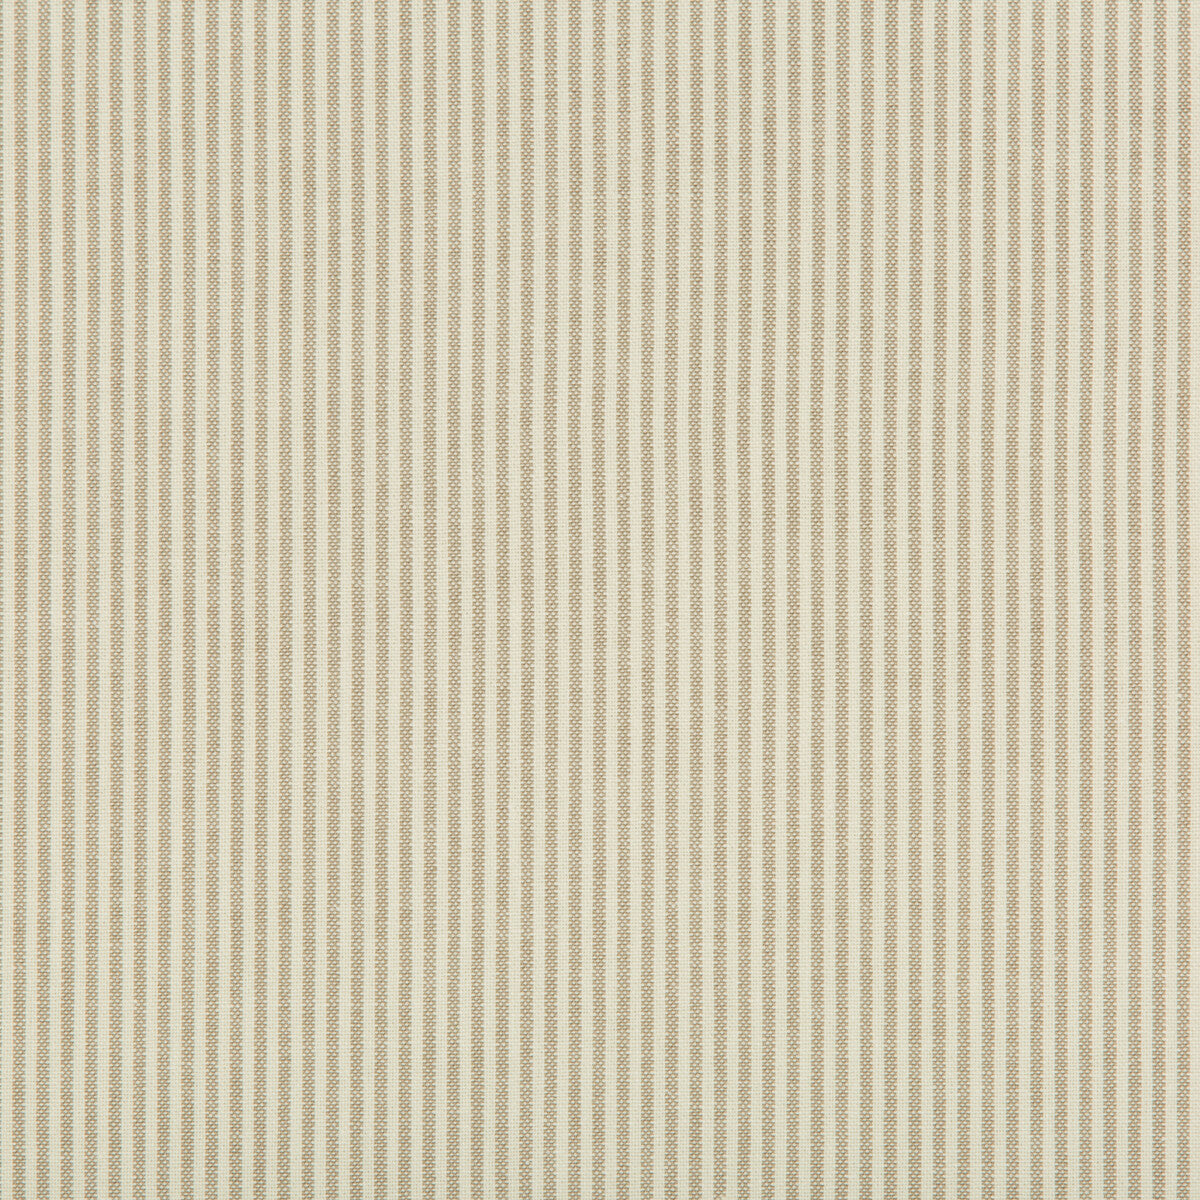 Kravet Basics fabric in 35199-16 color - pattern 35199.16.0 - by Kravet Basics